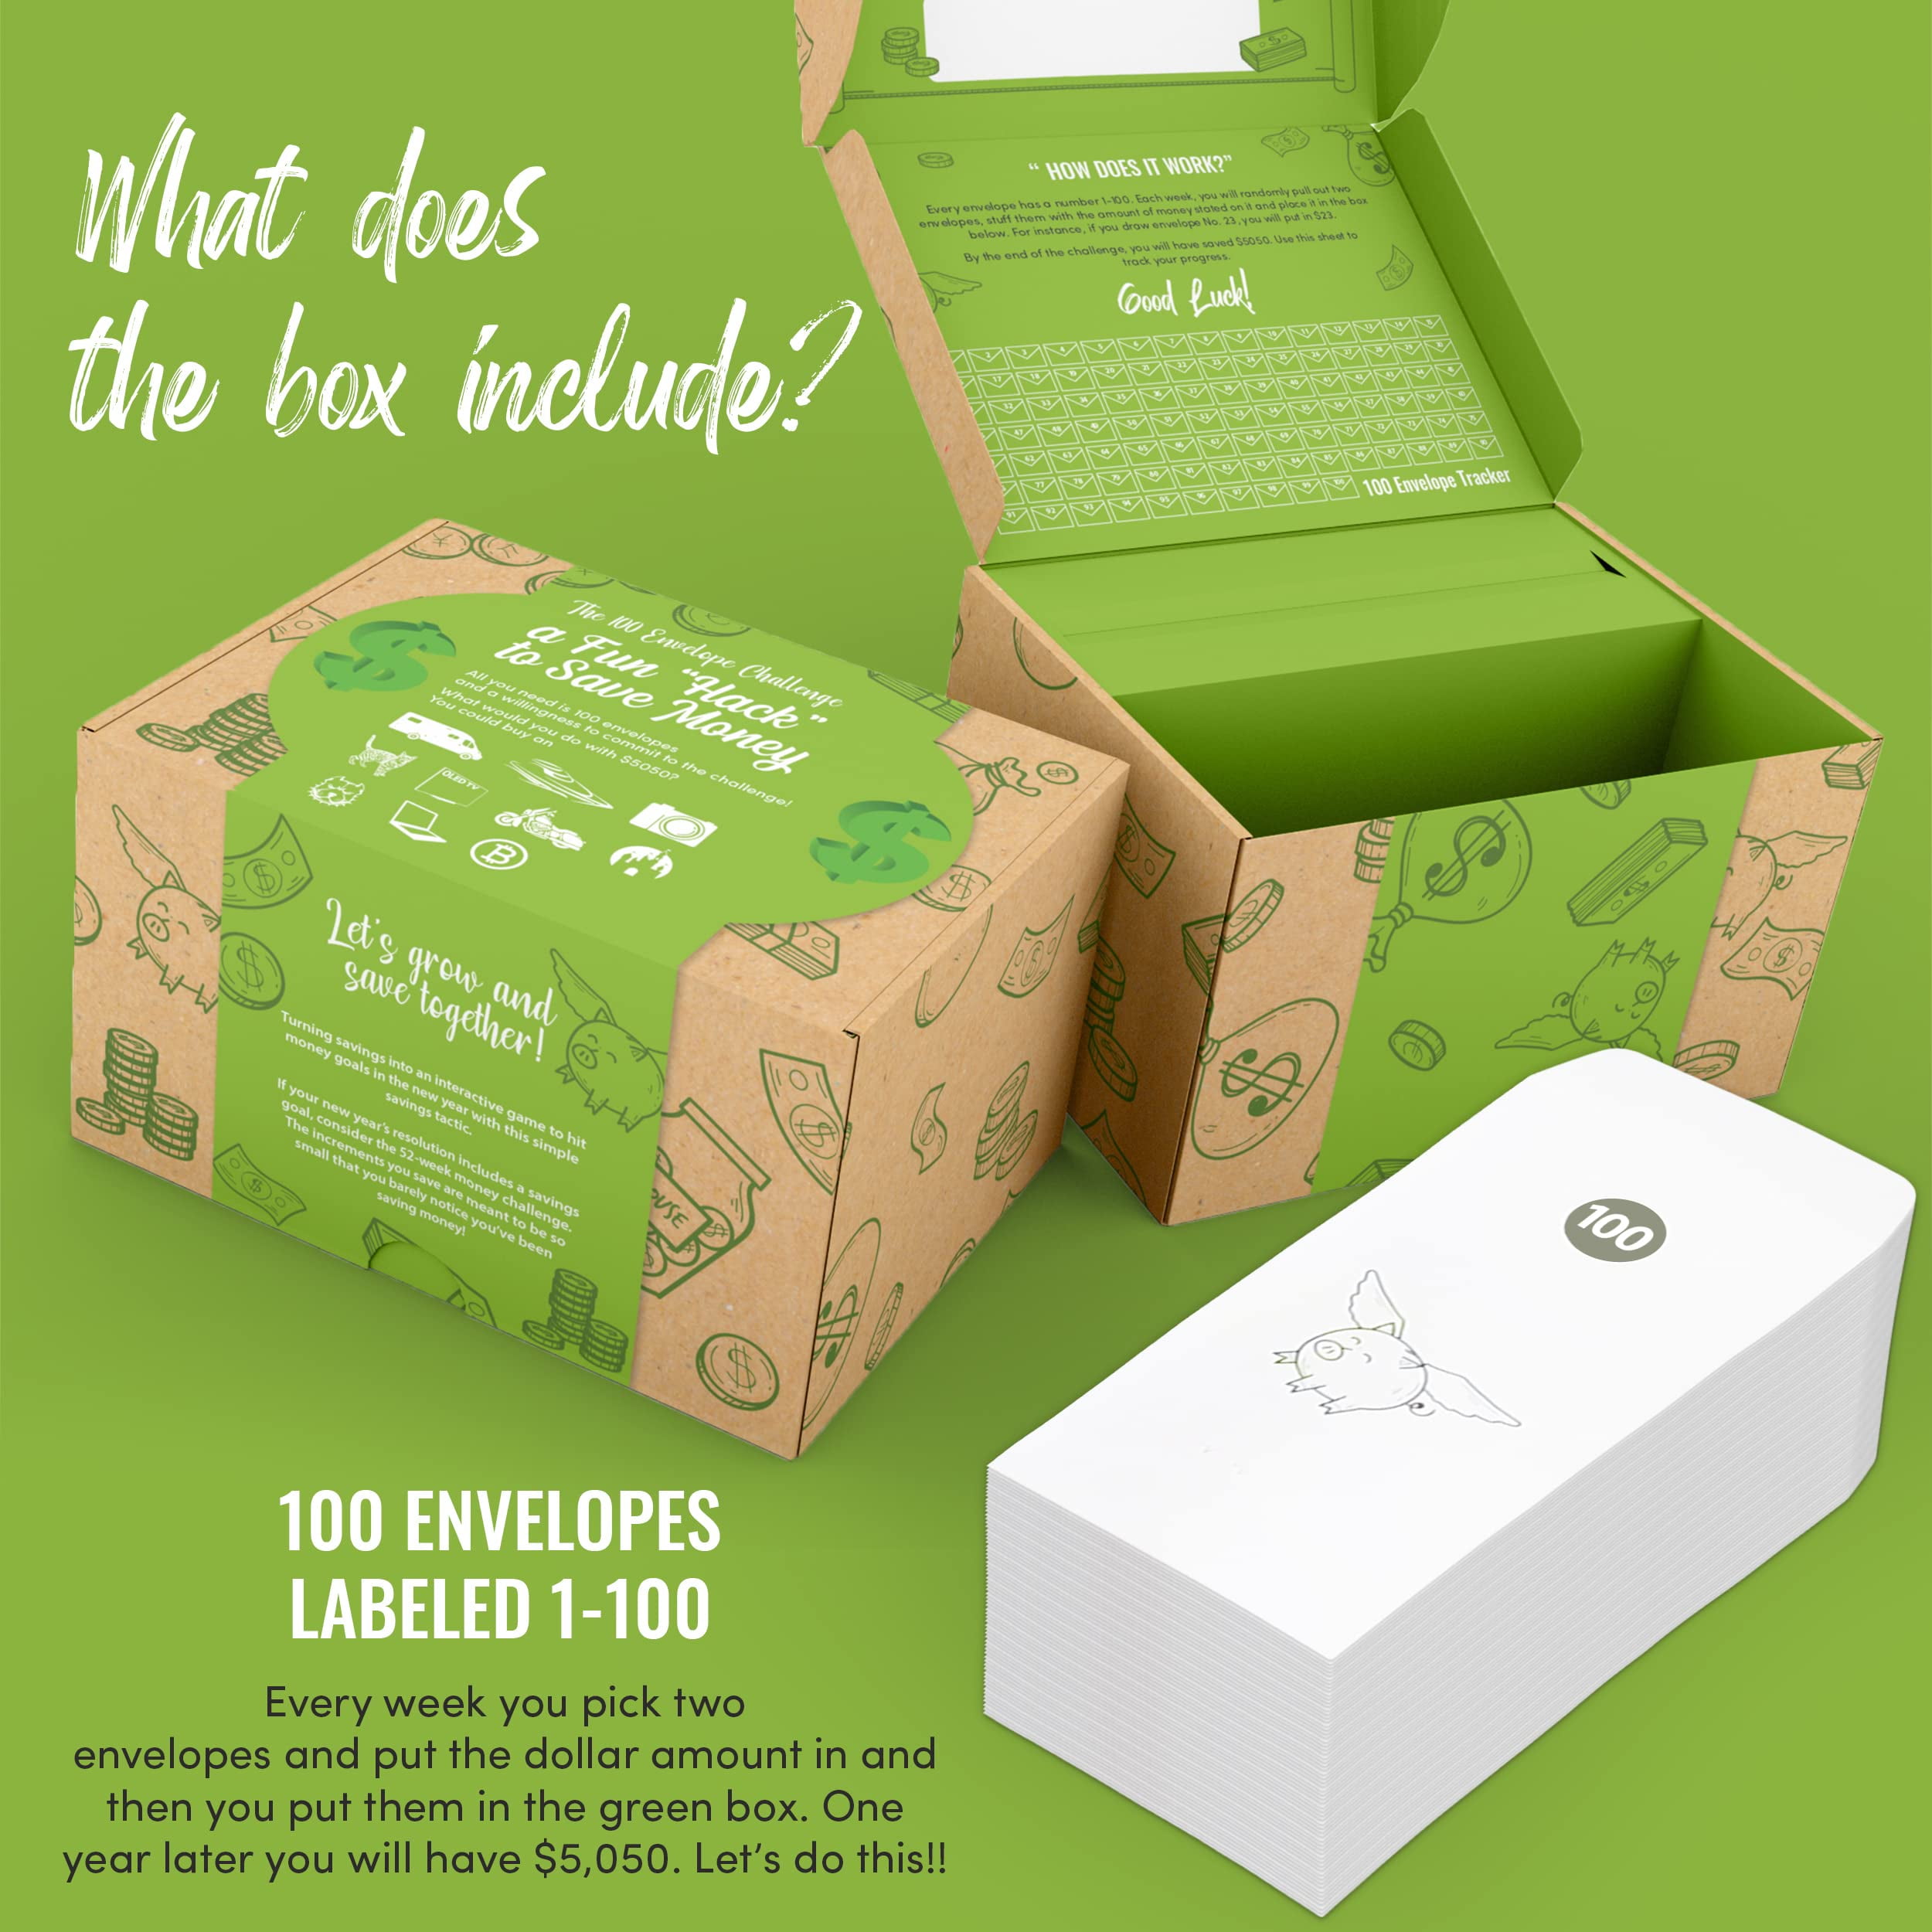 100 Envelope Challenge Box Set Engager le défi d'épargne complète